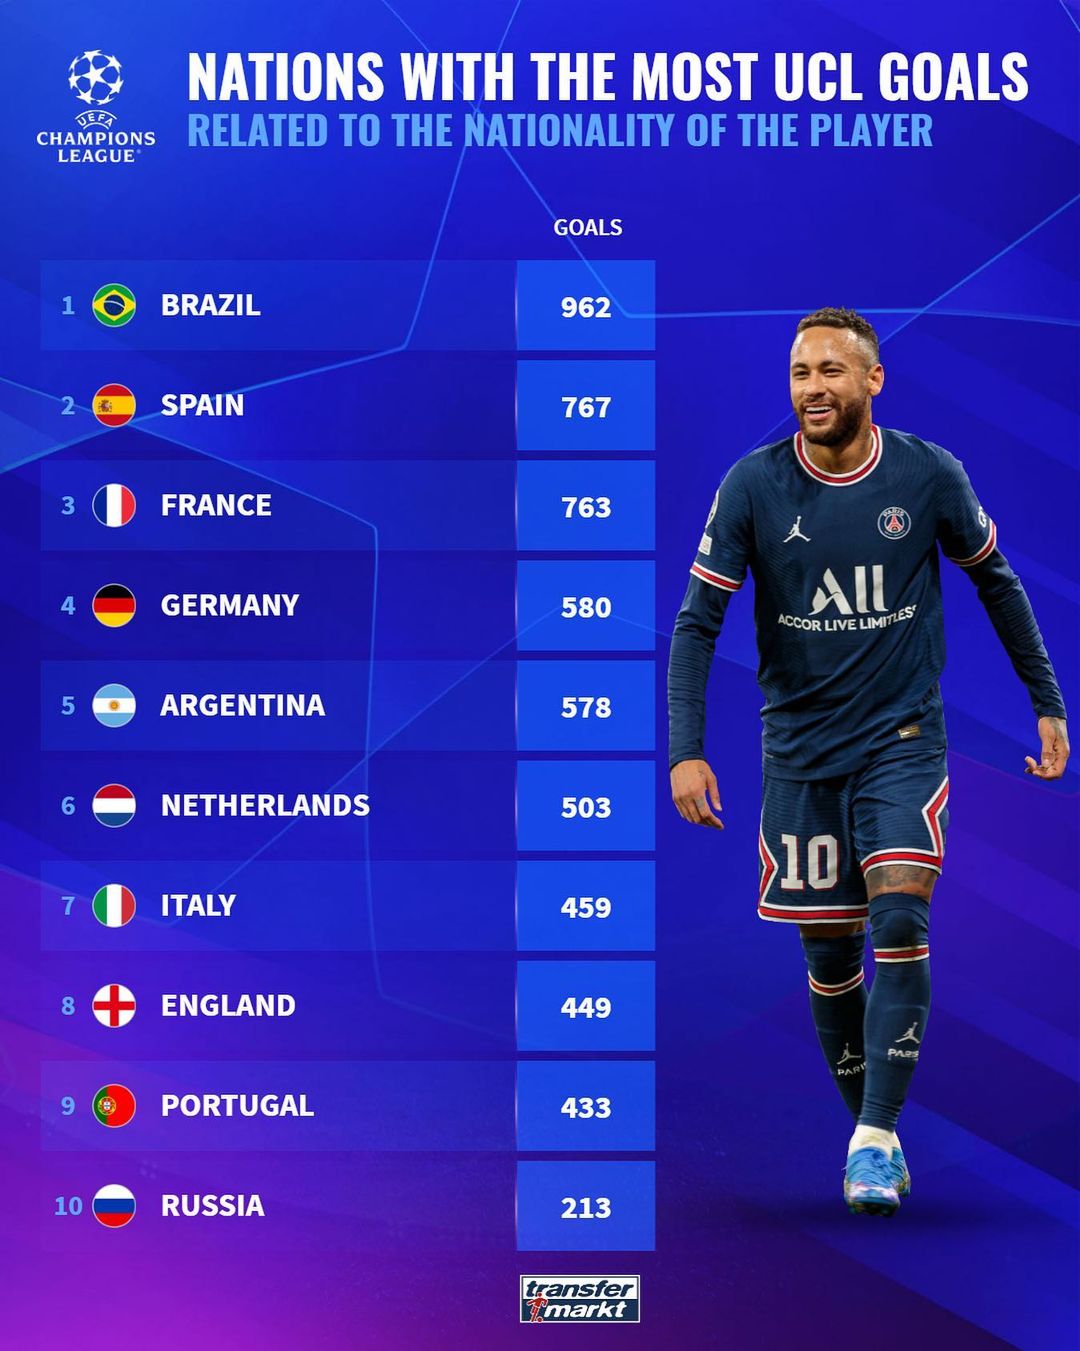 欧冠历史上巴西球员取得进球最多，之后为西班牙、法国球员